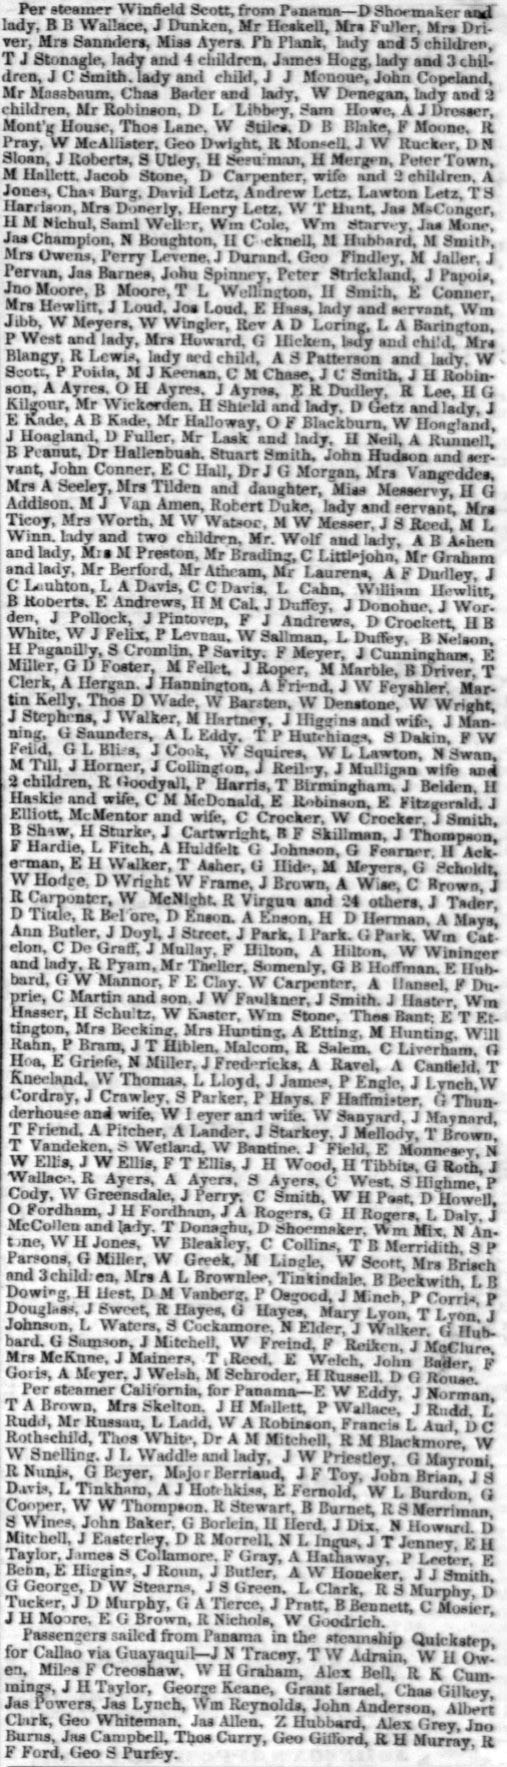 Passengers by the SS Winfield Scott, June 15, 1852.